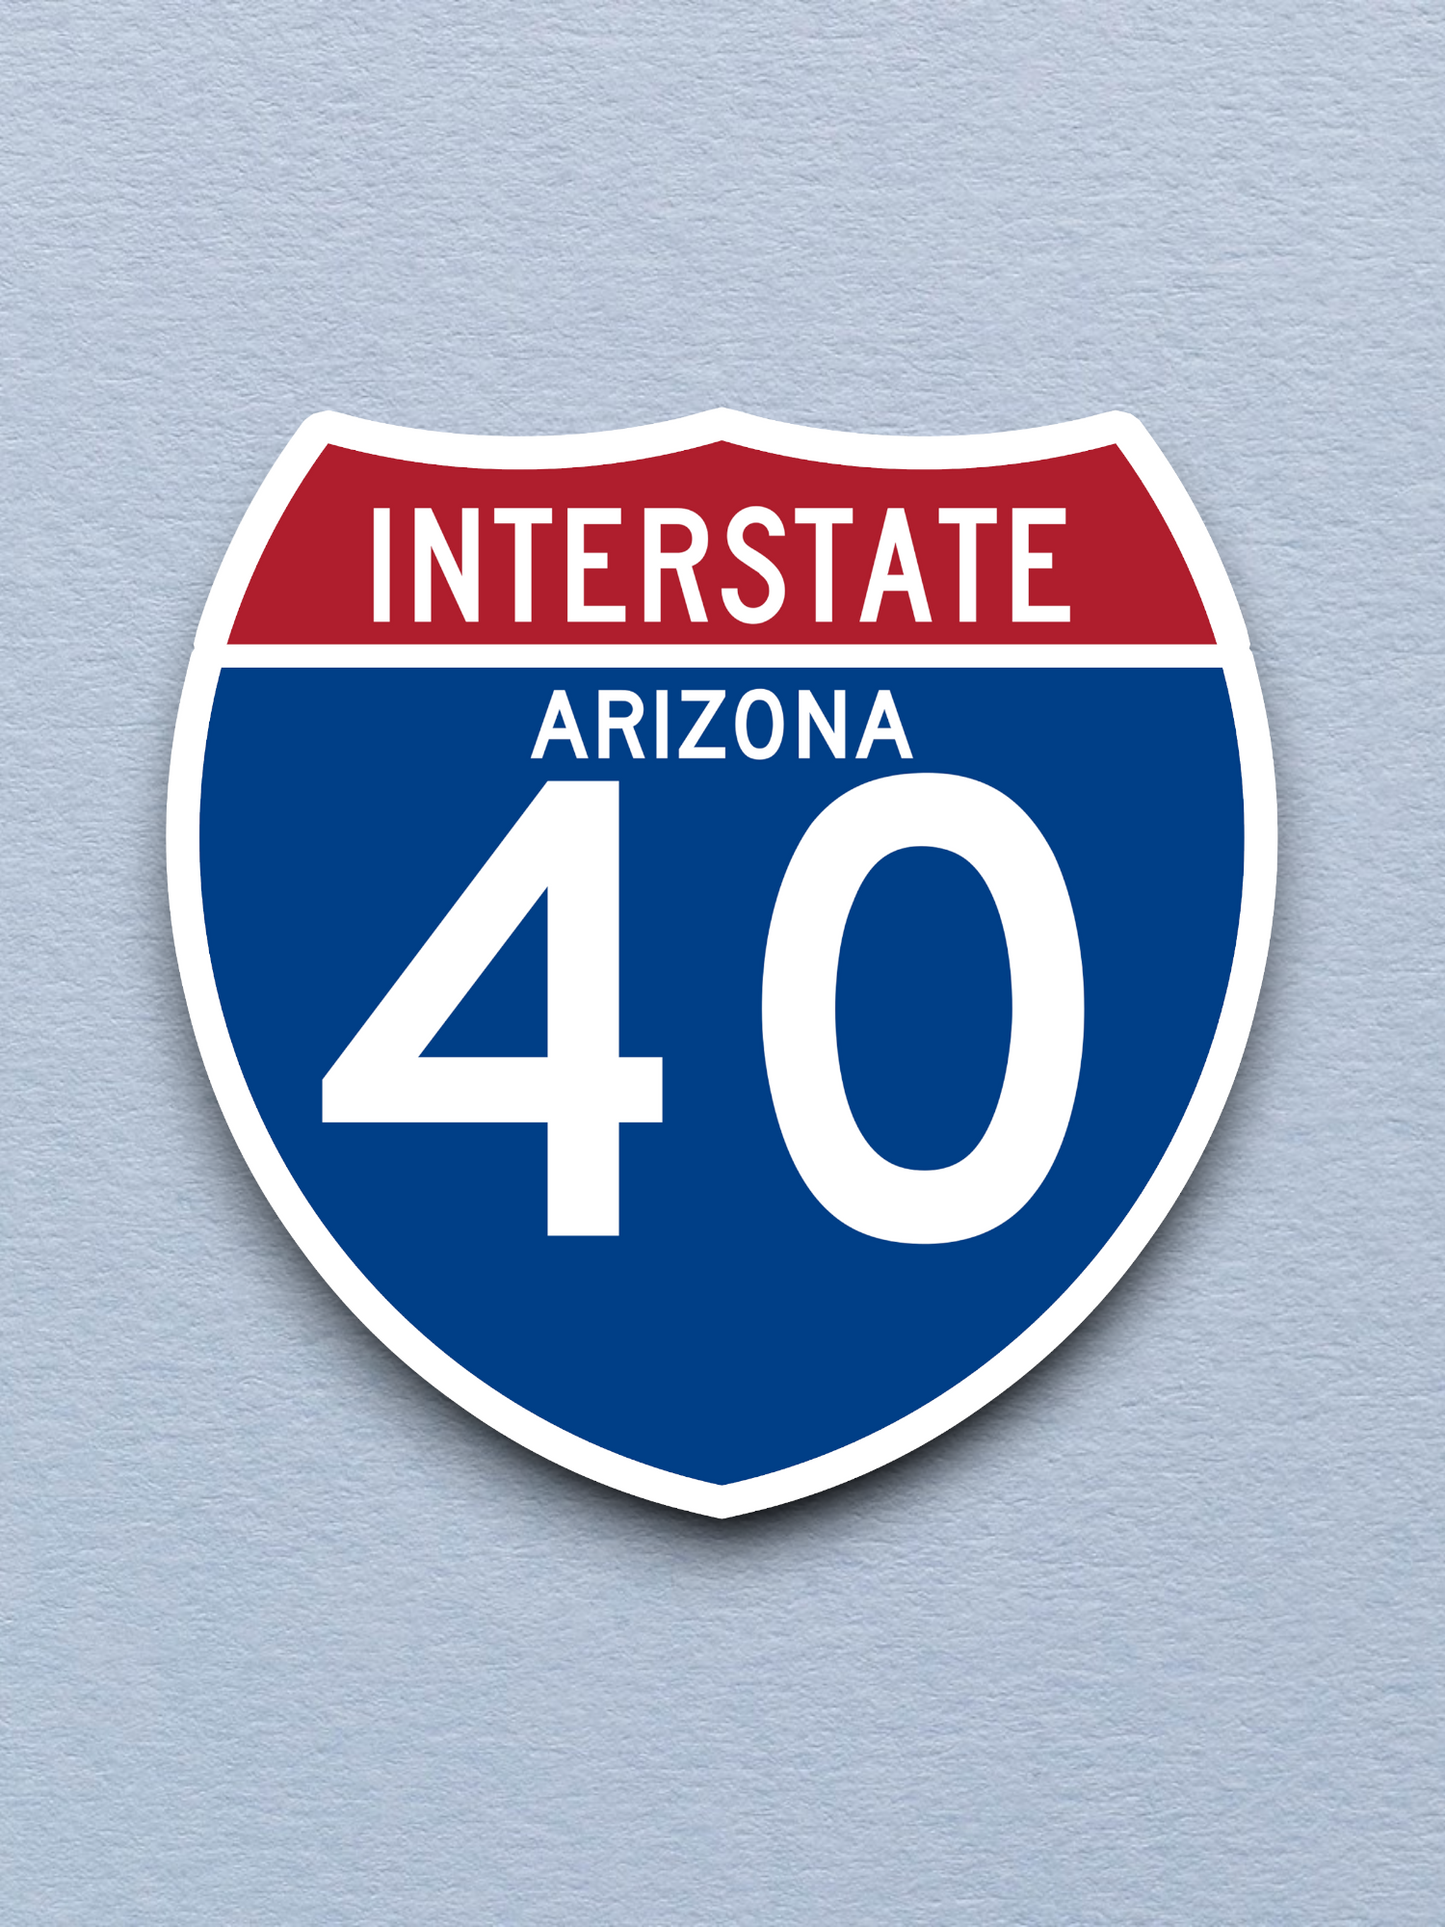 Interstate I-40 Arizona Sticker